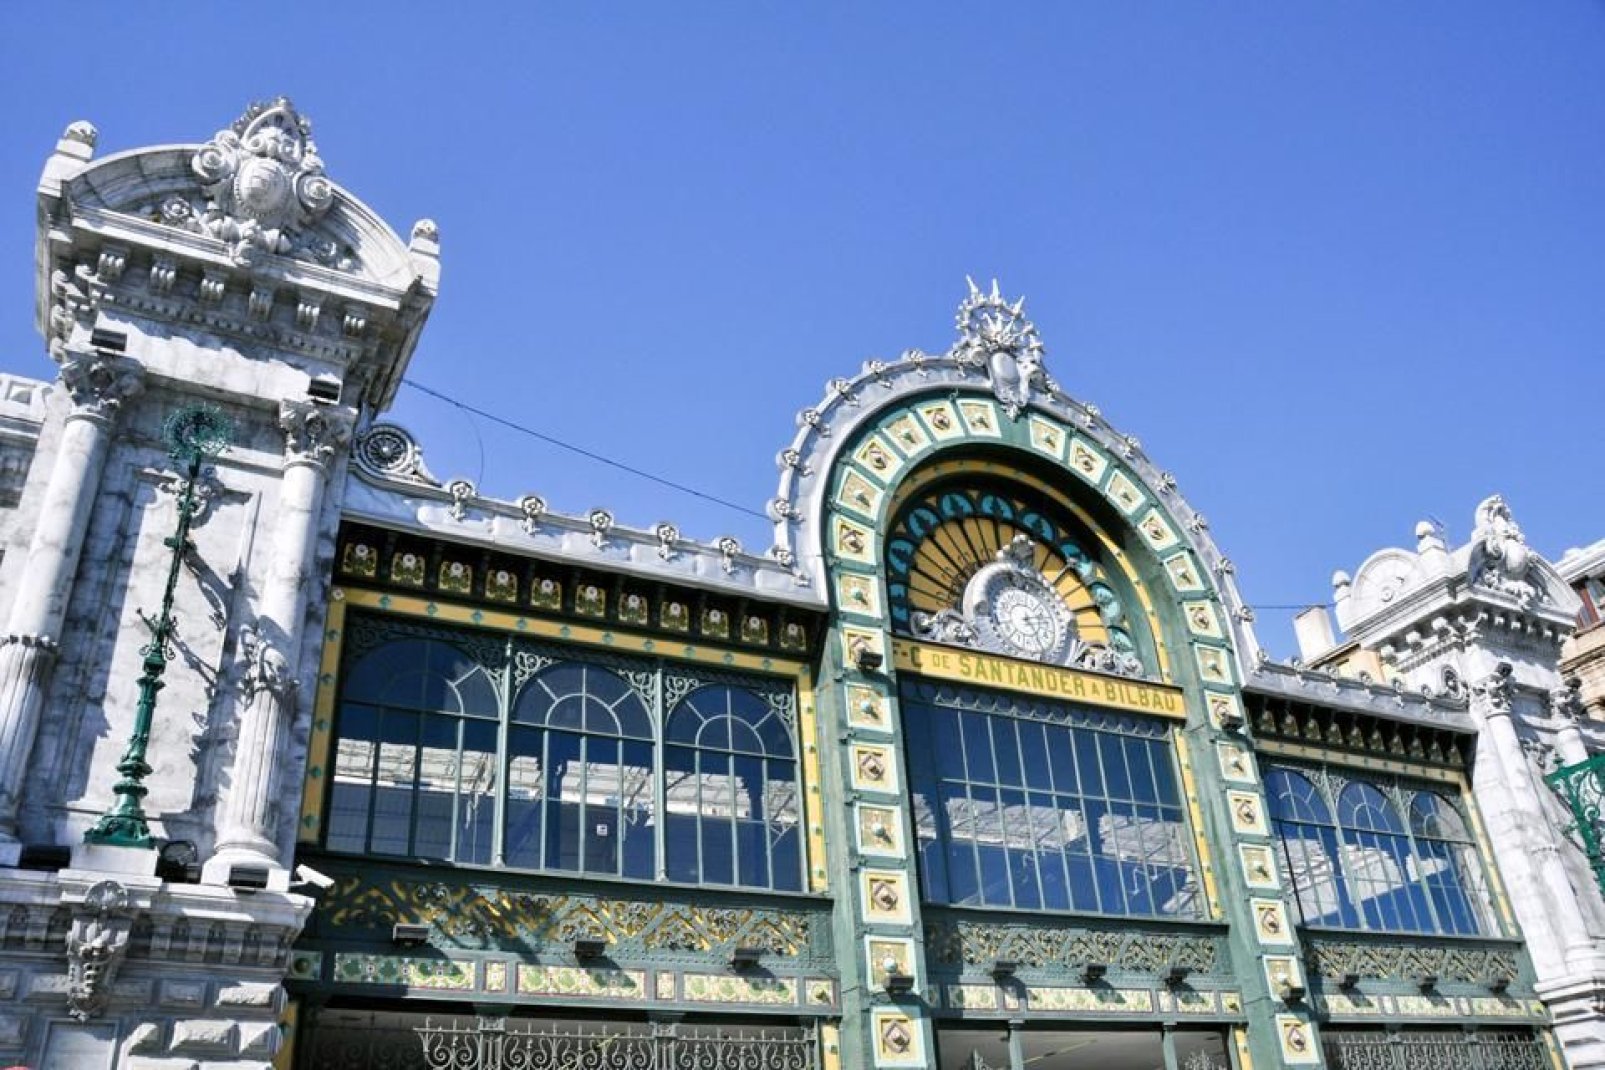 La gare Concordia érigée en 1902, est un édifice singulier du style Art Nouveau. Elle fait partie du patrimoine de la "Belle Epoque" de Bilbao.